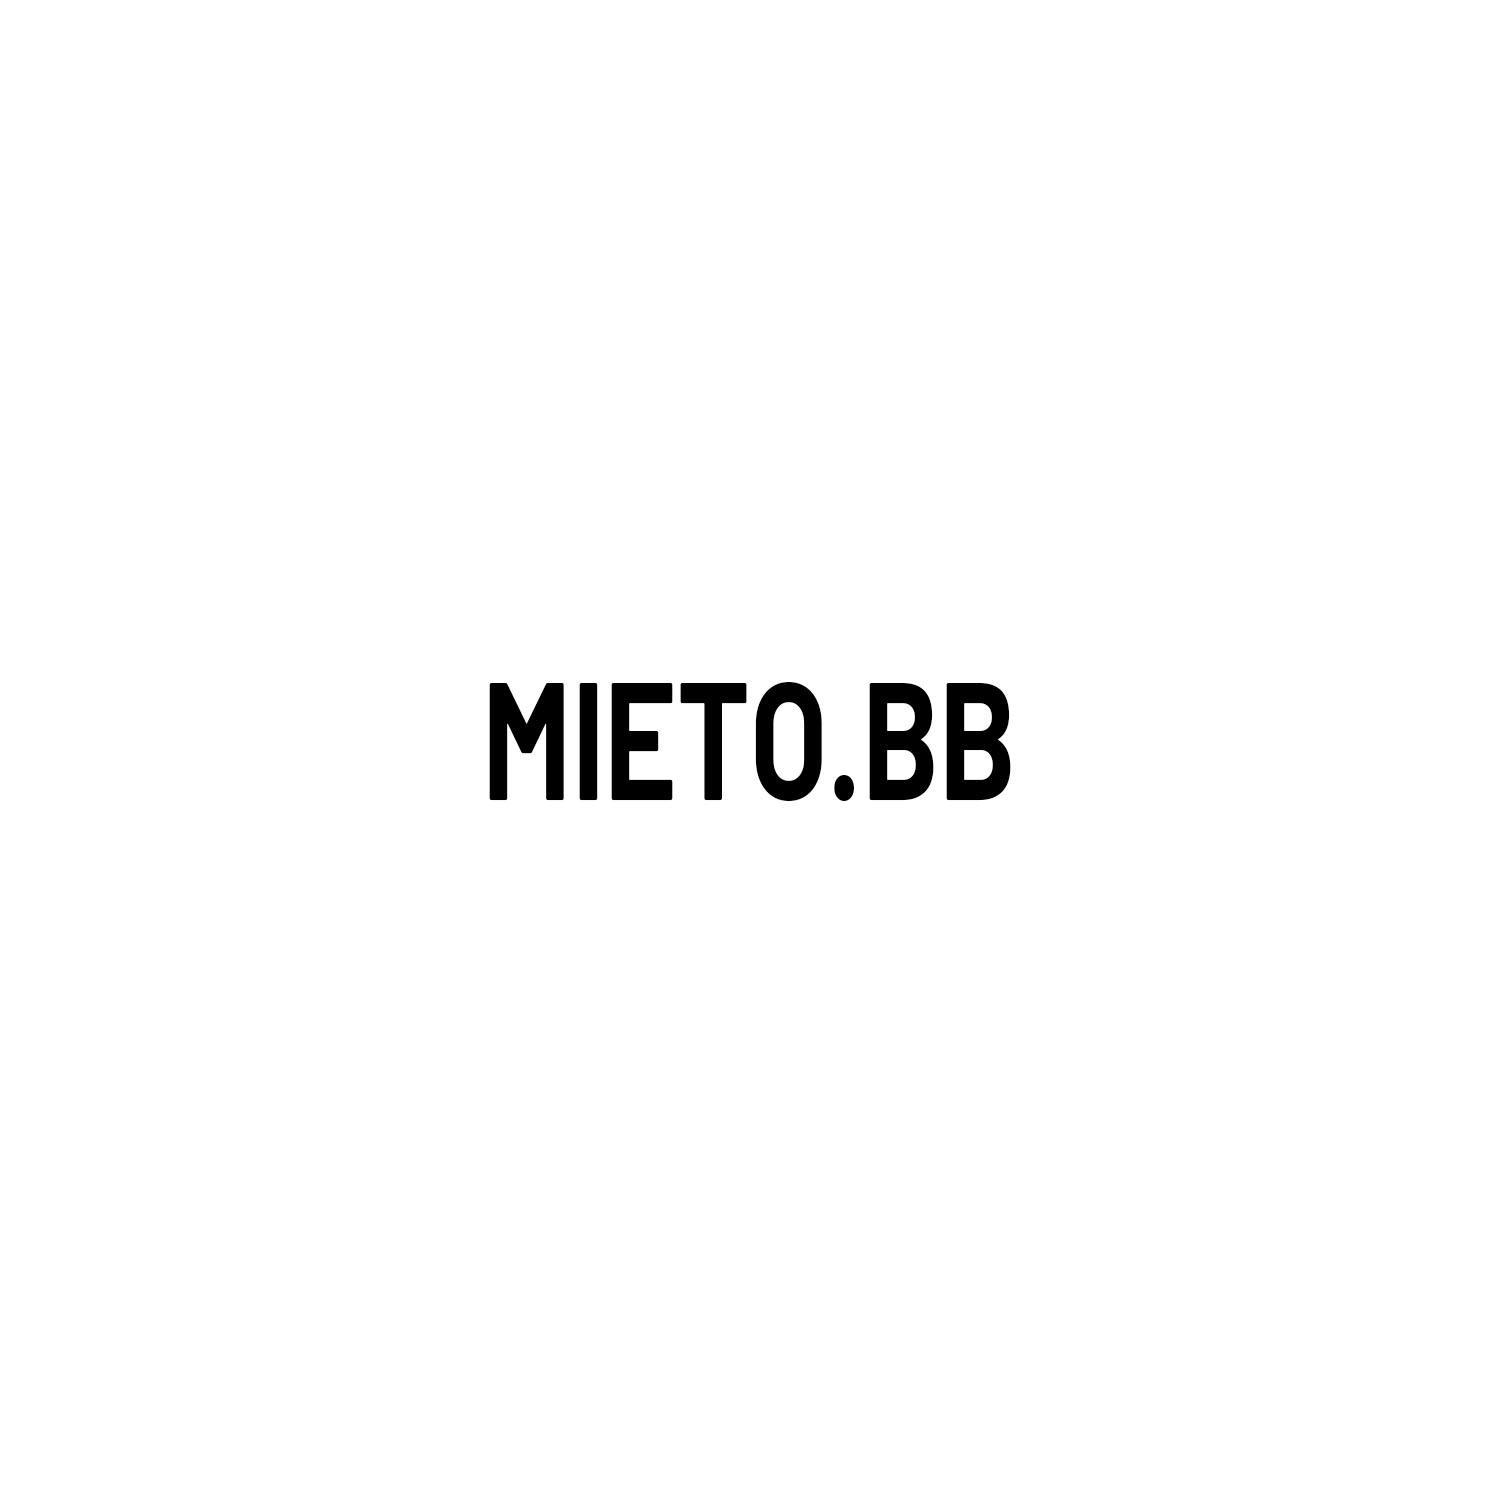 MIETO.BB